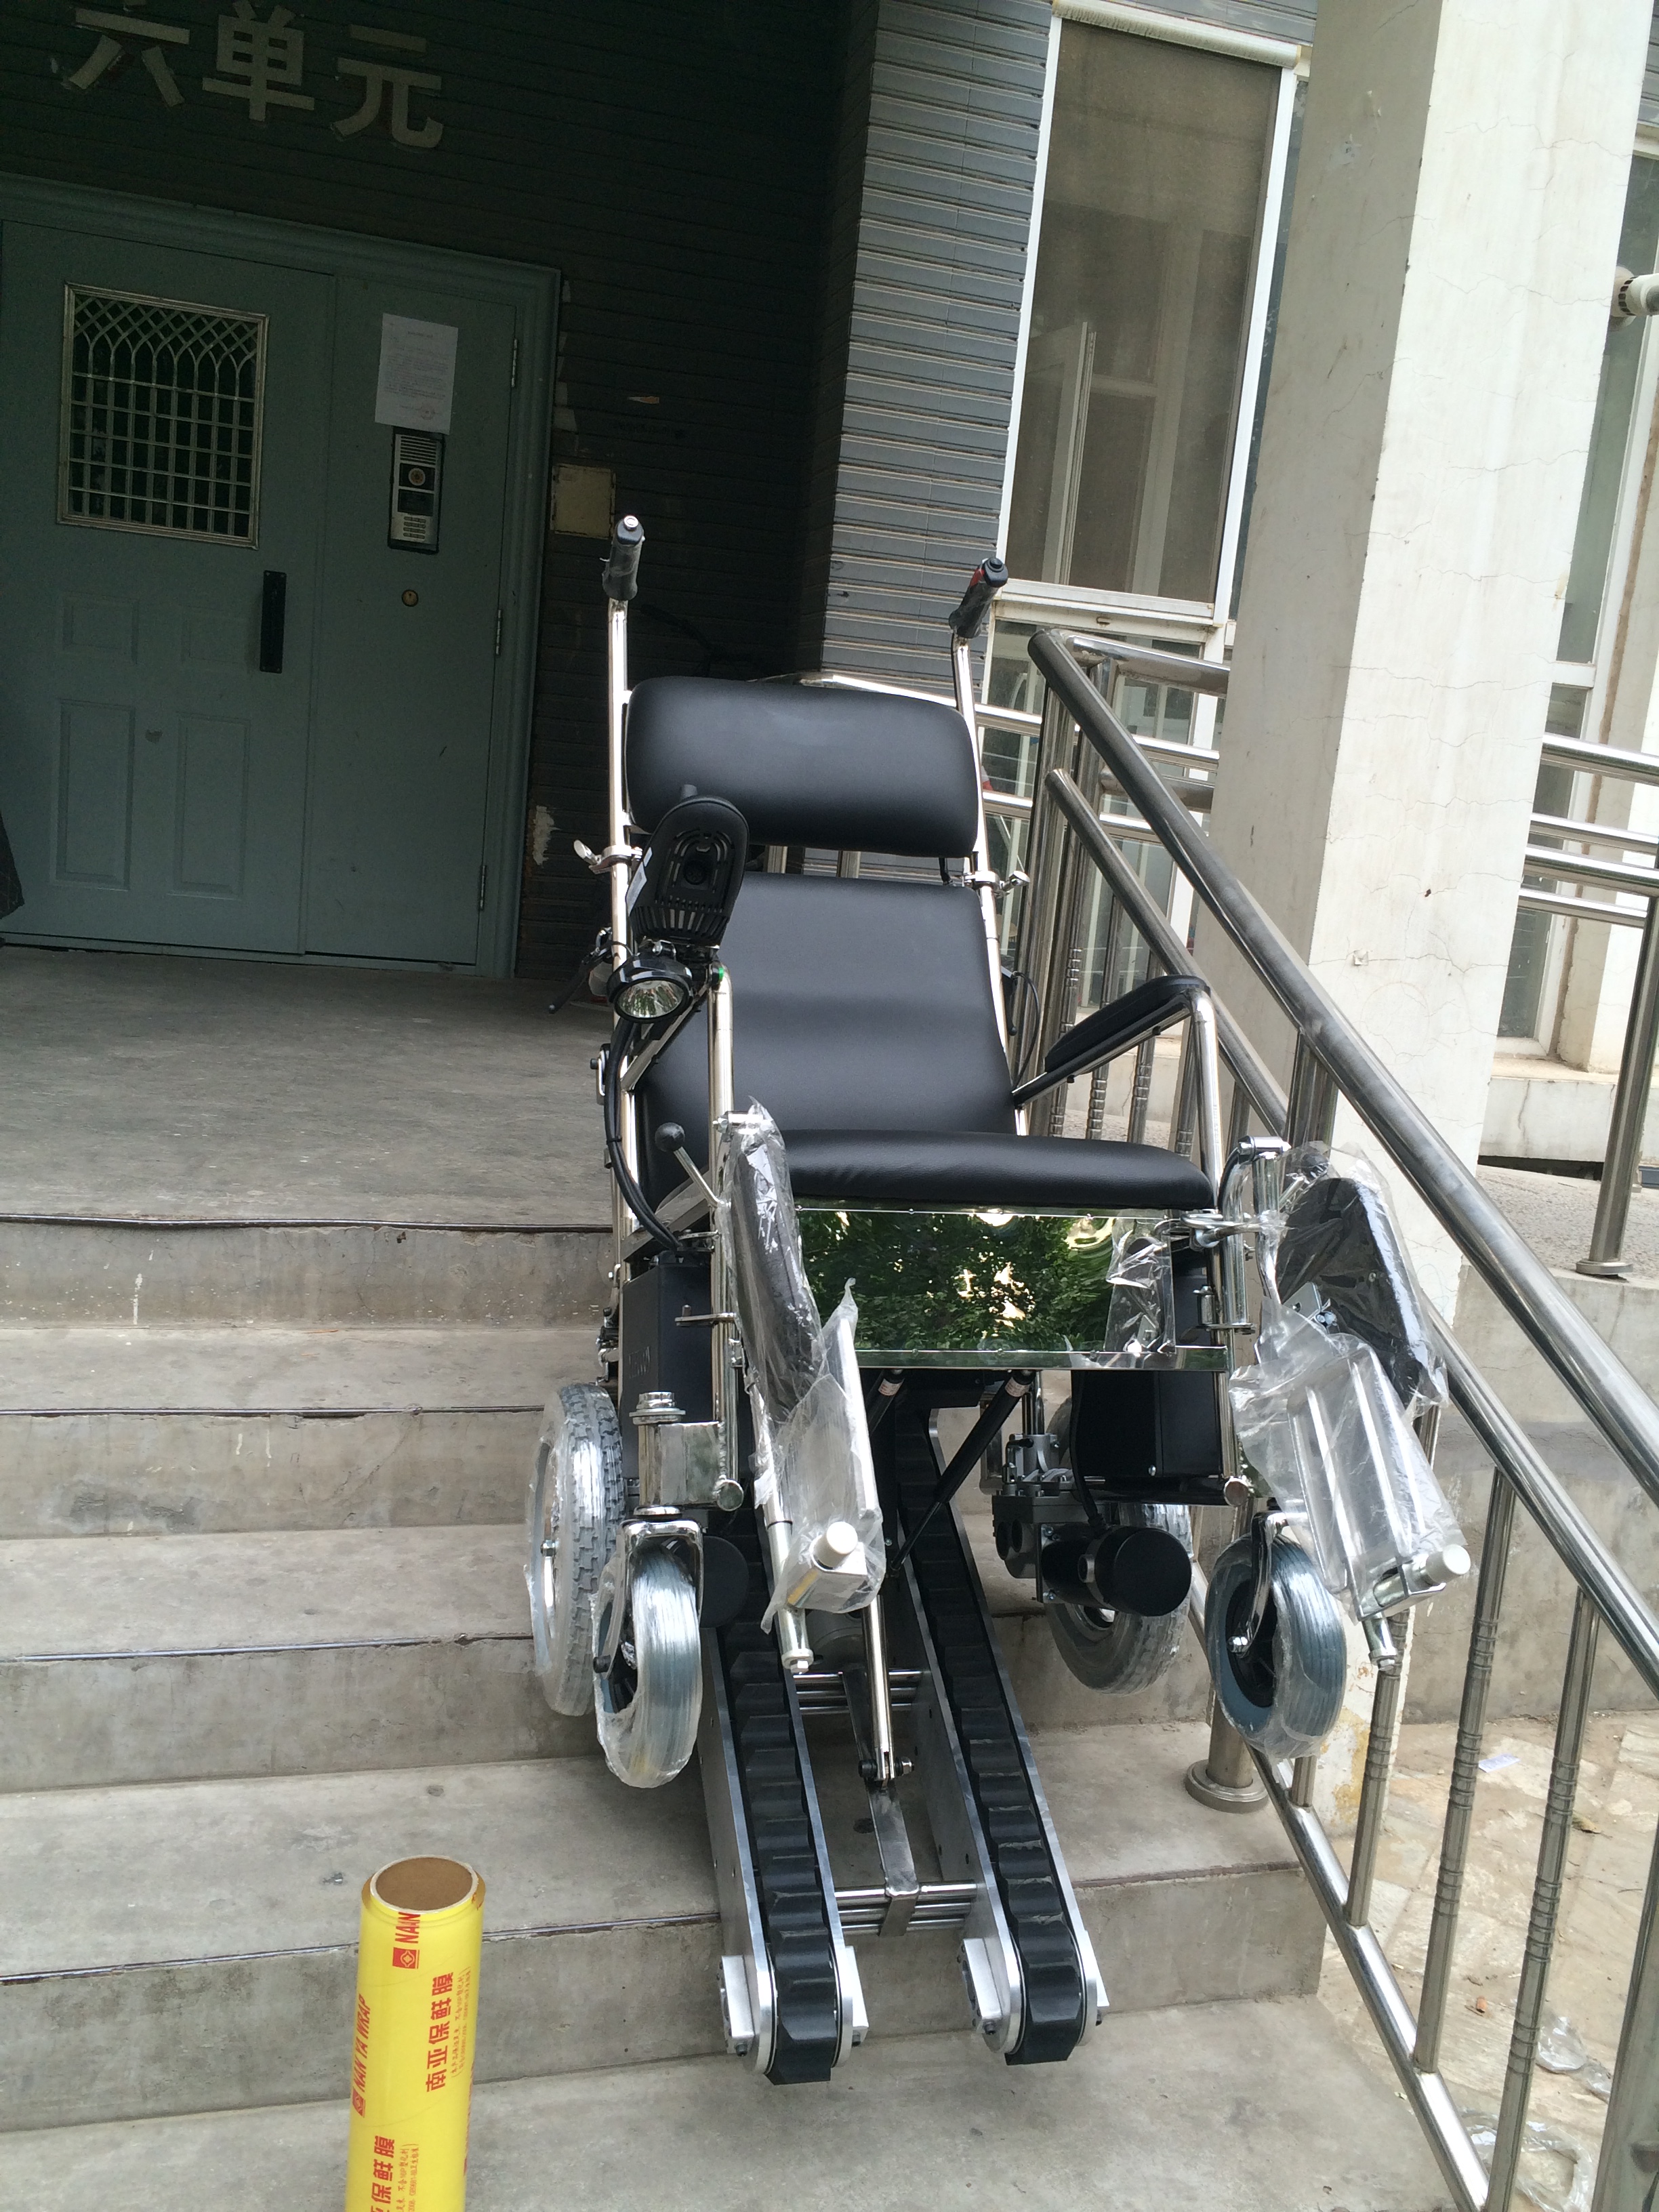 互邦之家老年人上下楼设备残疾人上 互邦之家老年上下楼电动爬楼轮椅车